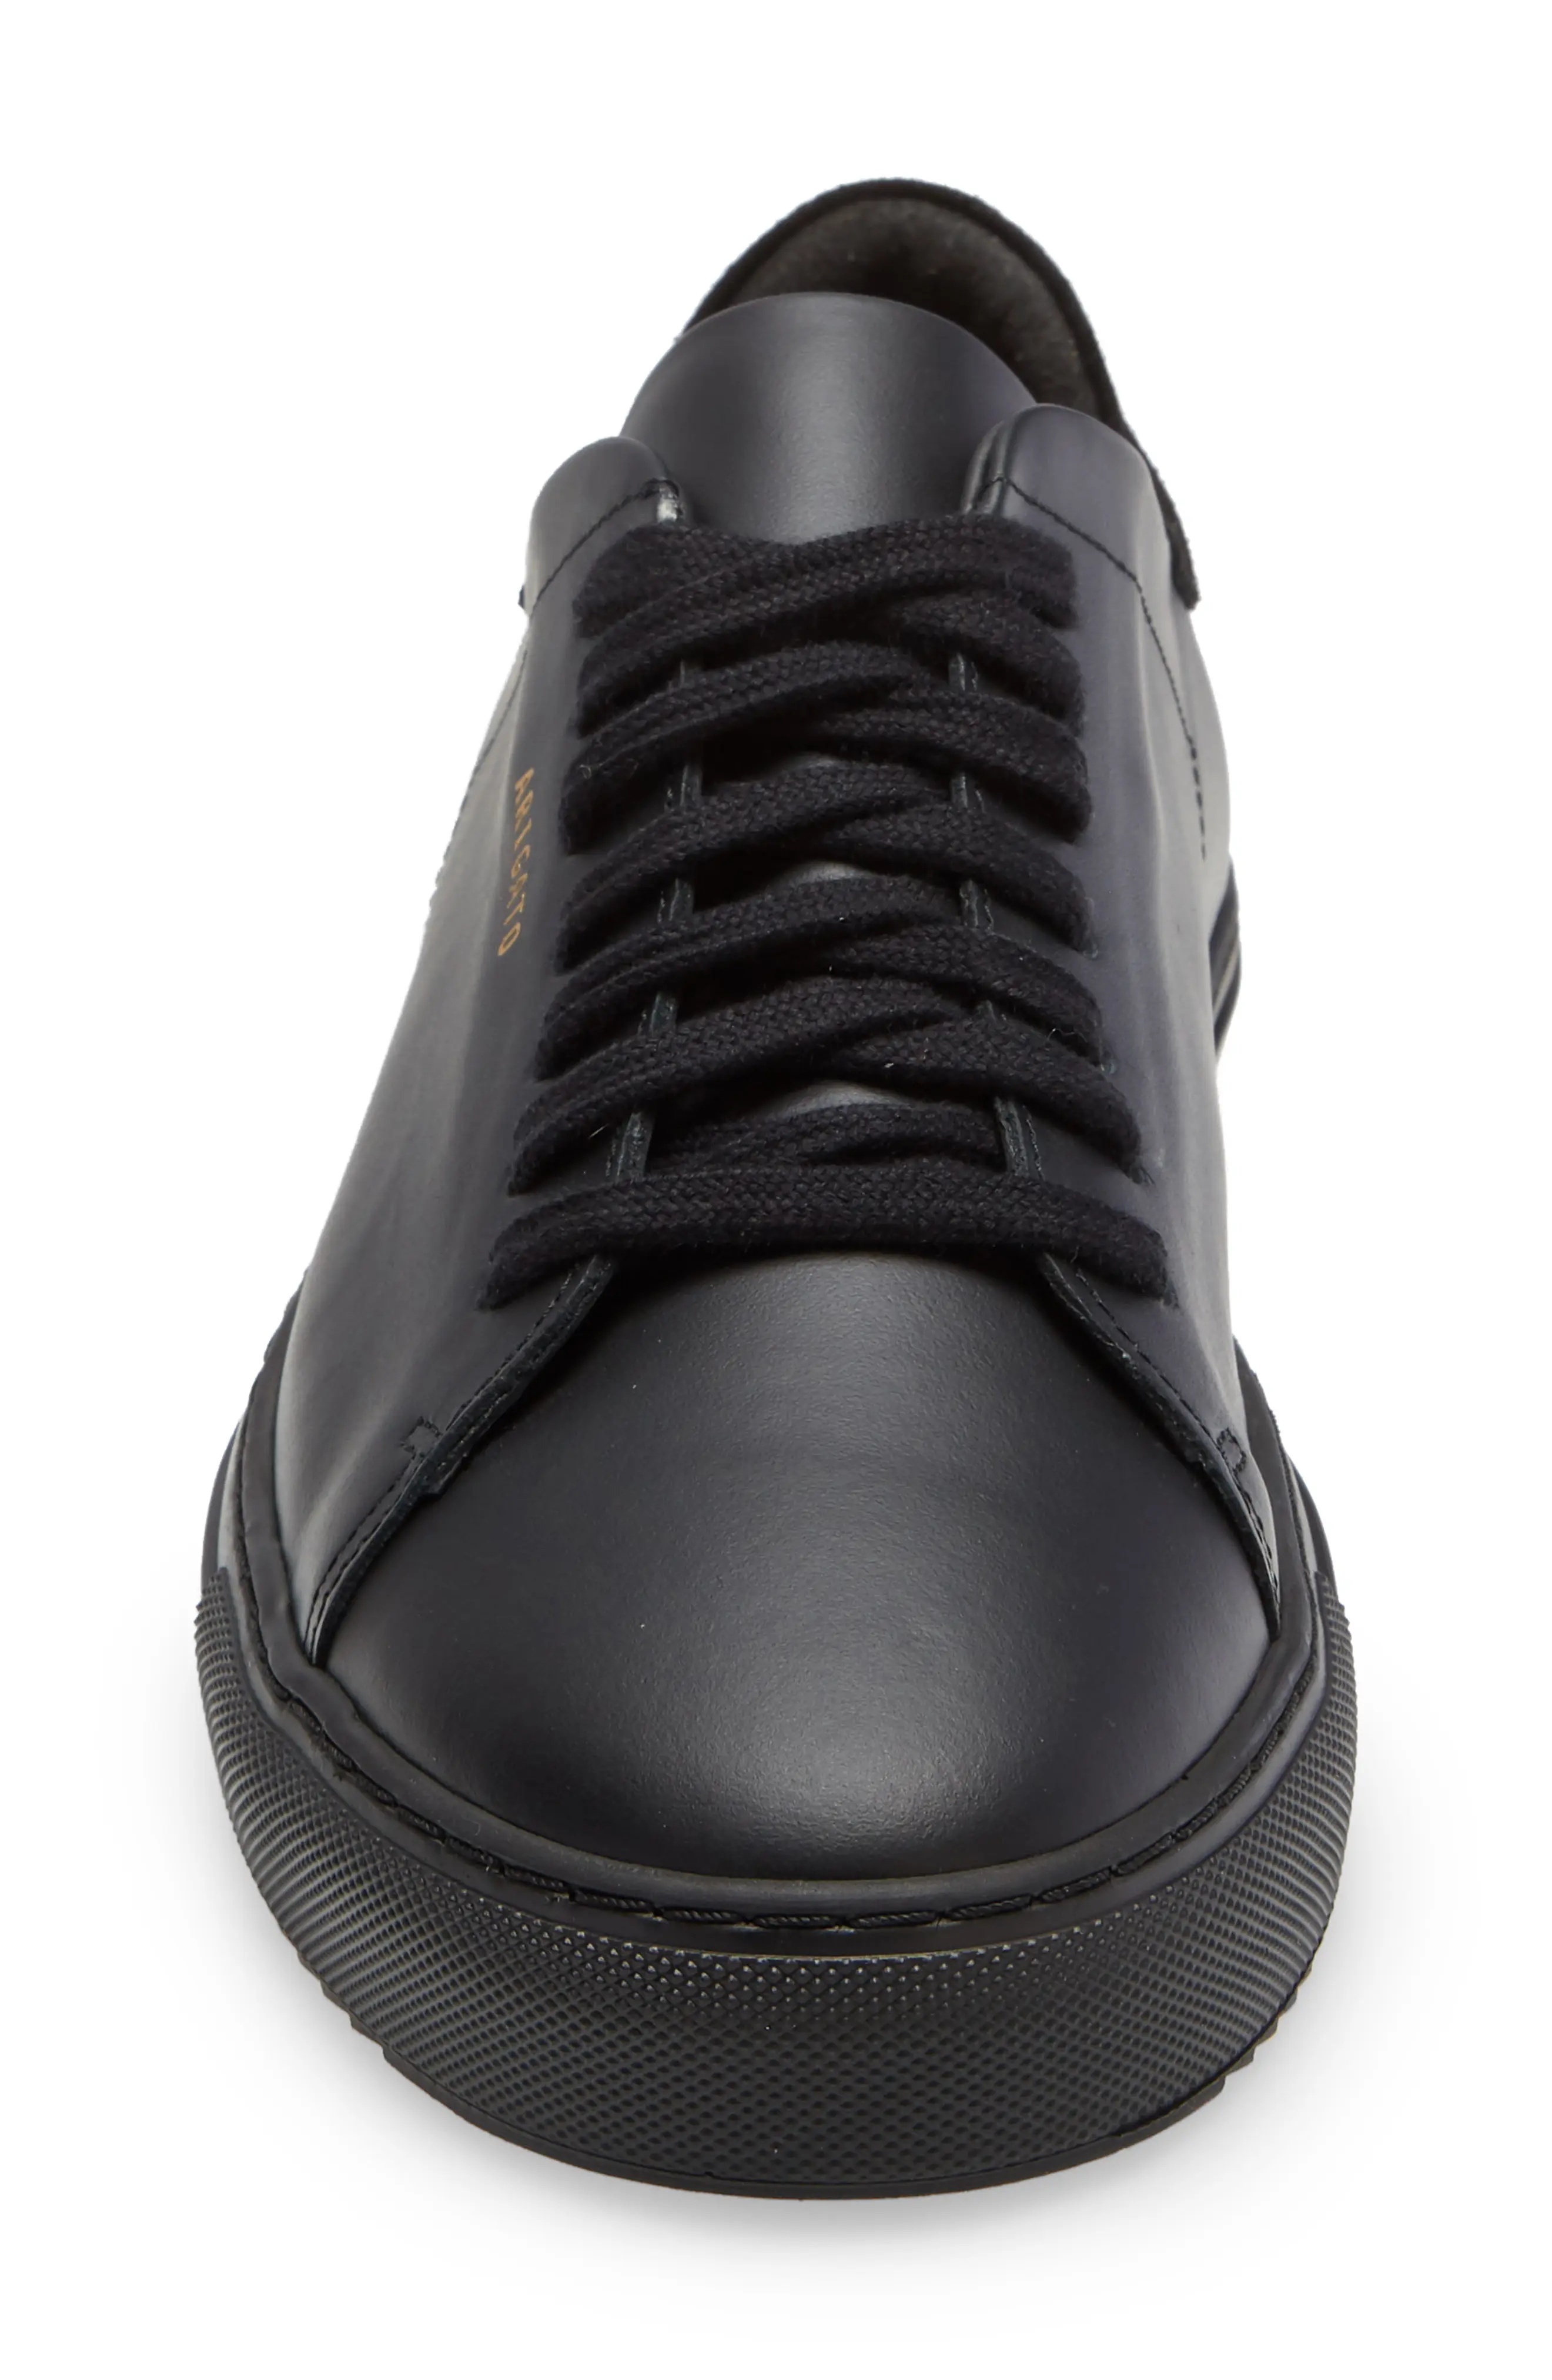 Clean 90 Sneaker in Black/Black Leather - 4